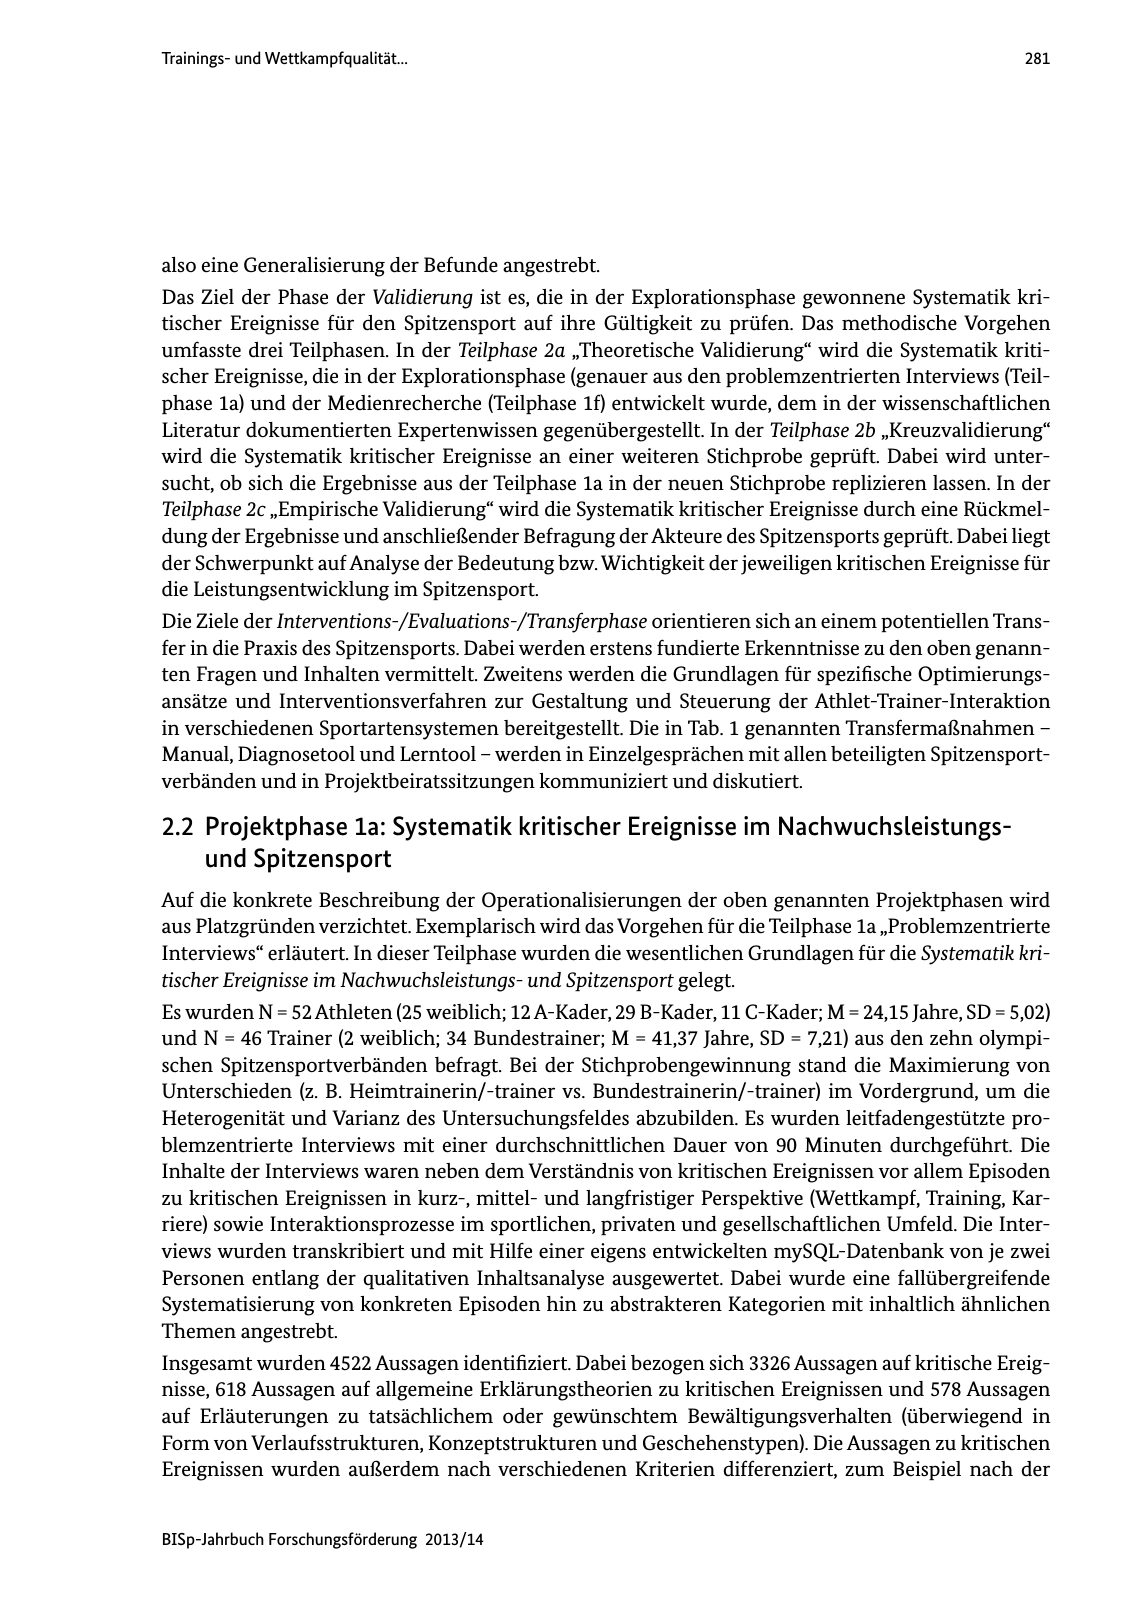 Vorschau BISp-Jahrbuch Forschungsförderung 2013/14 Seite 282